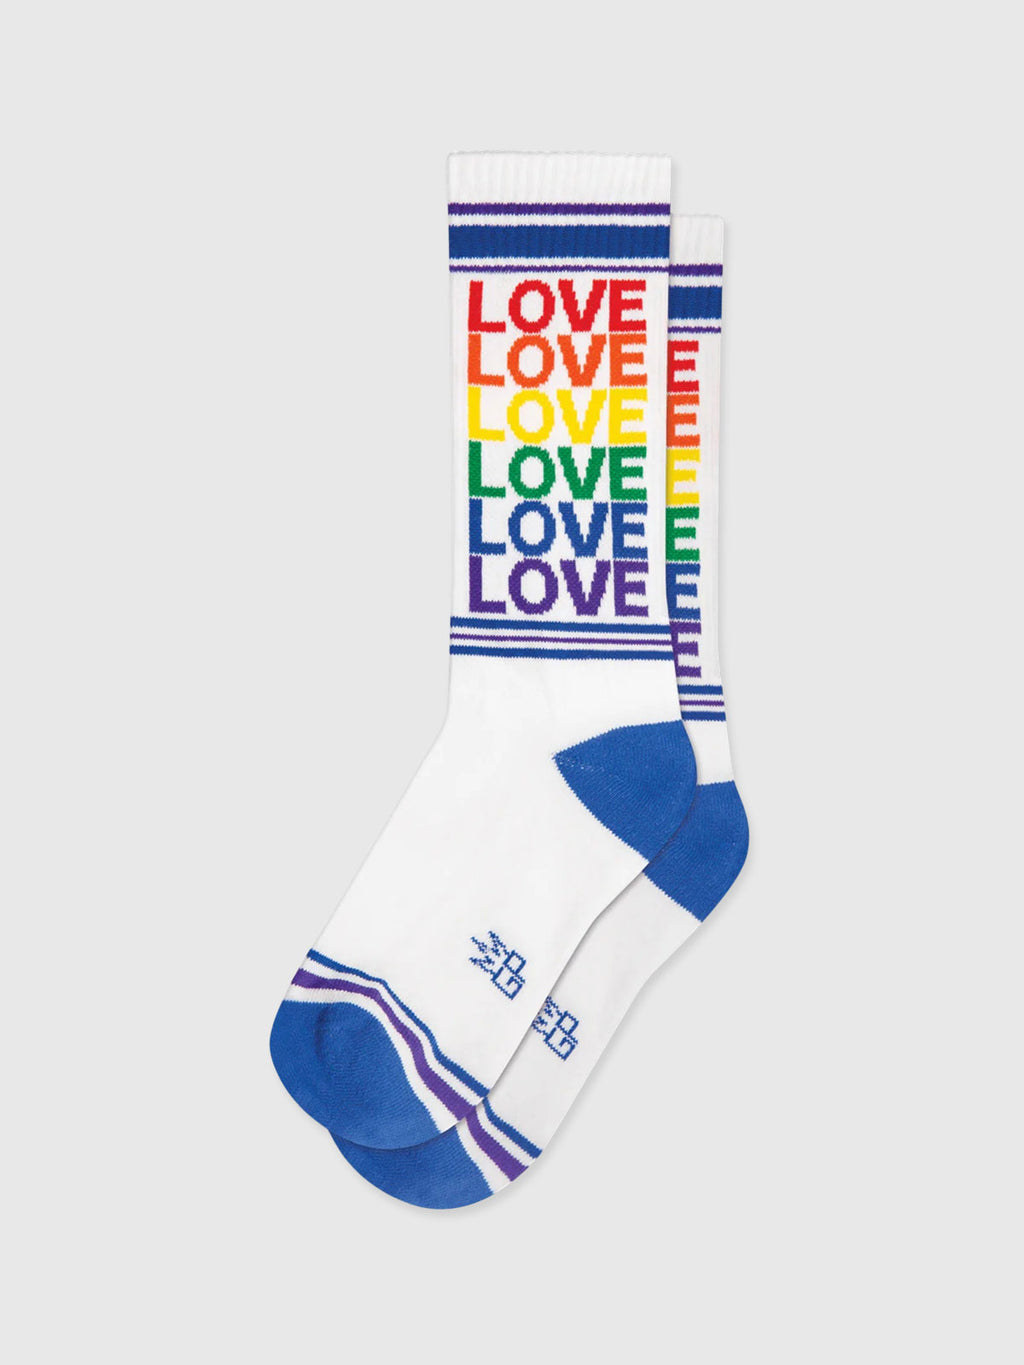 Gumball Poodle - Love Rainbow Socks